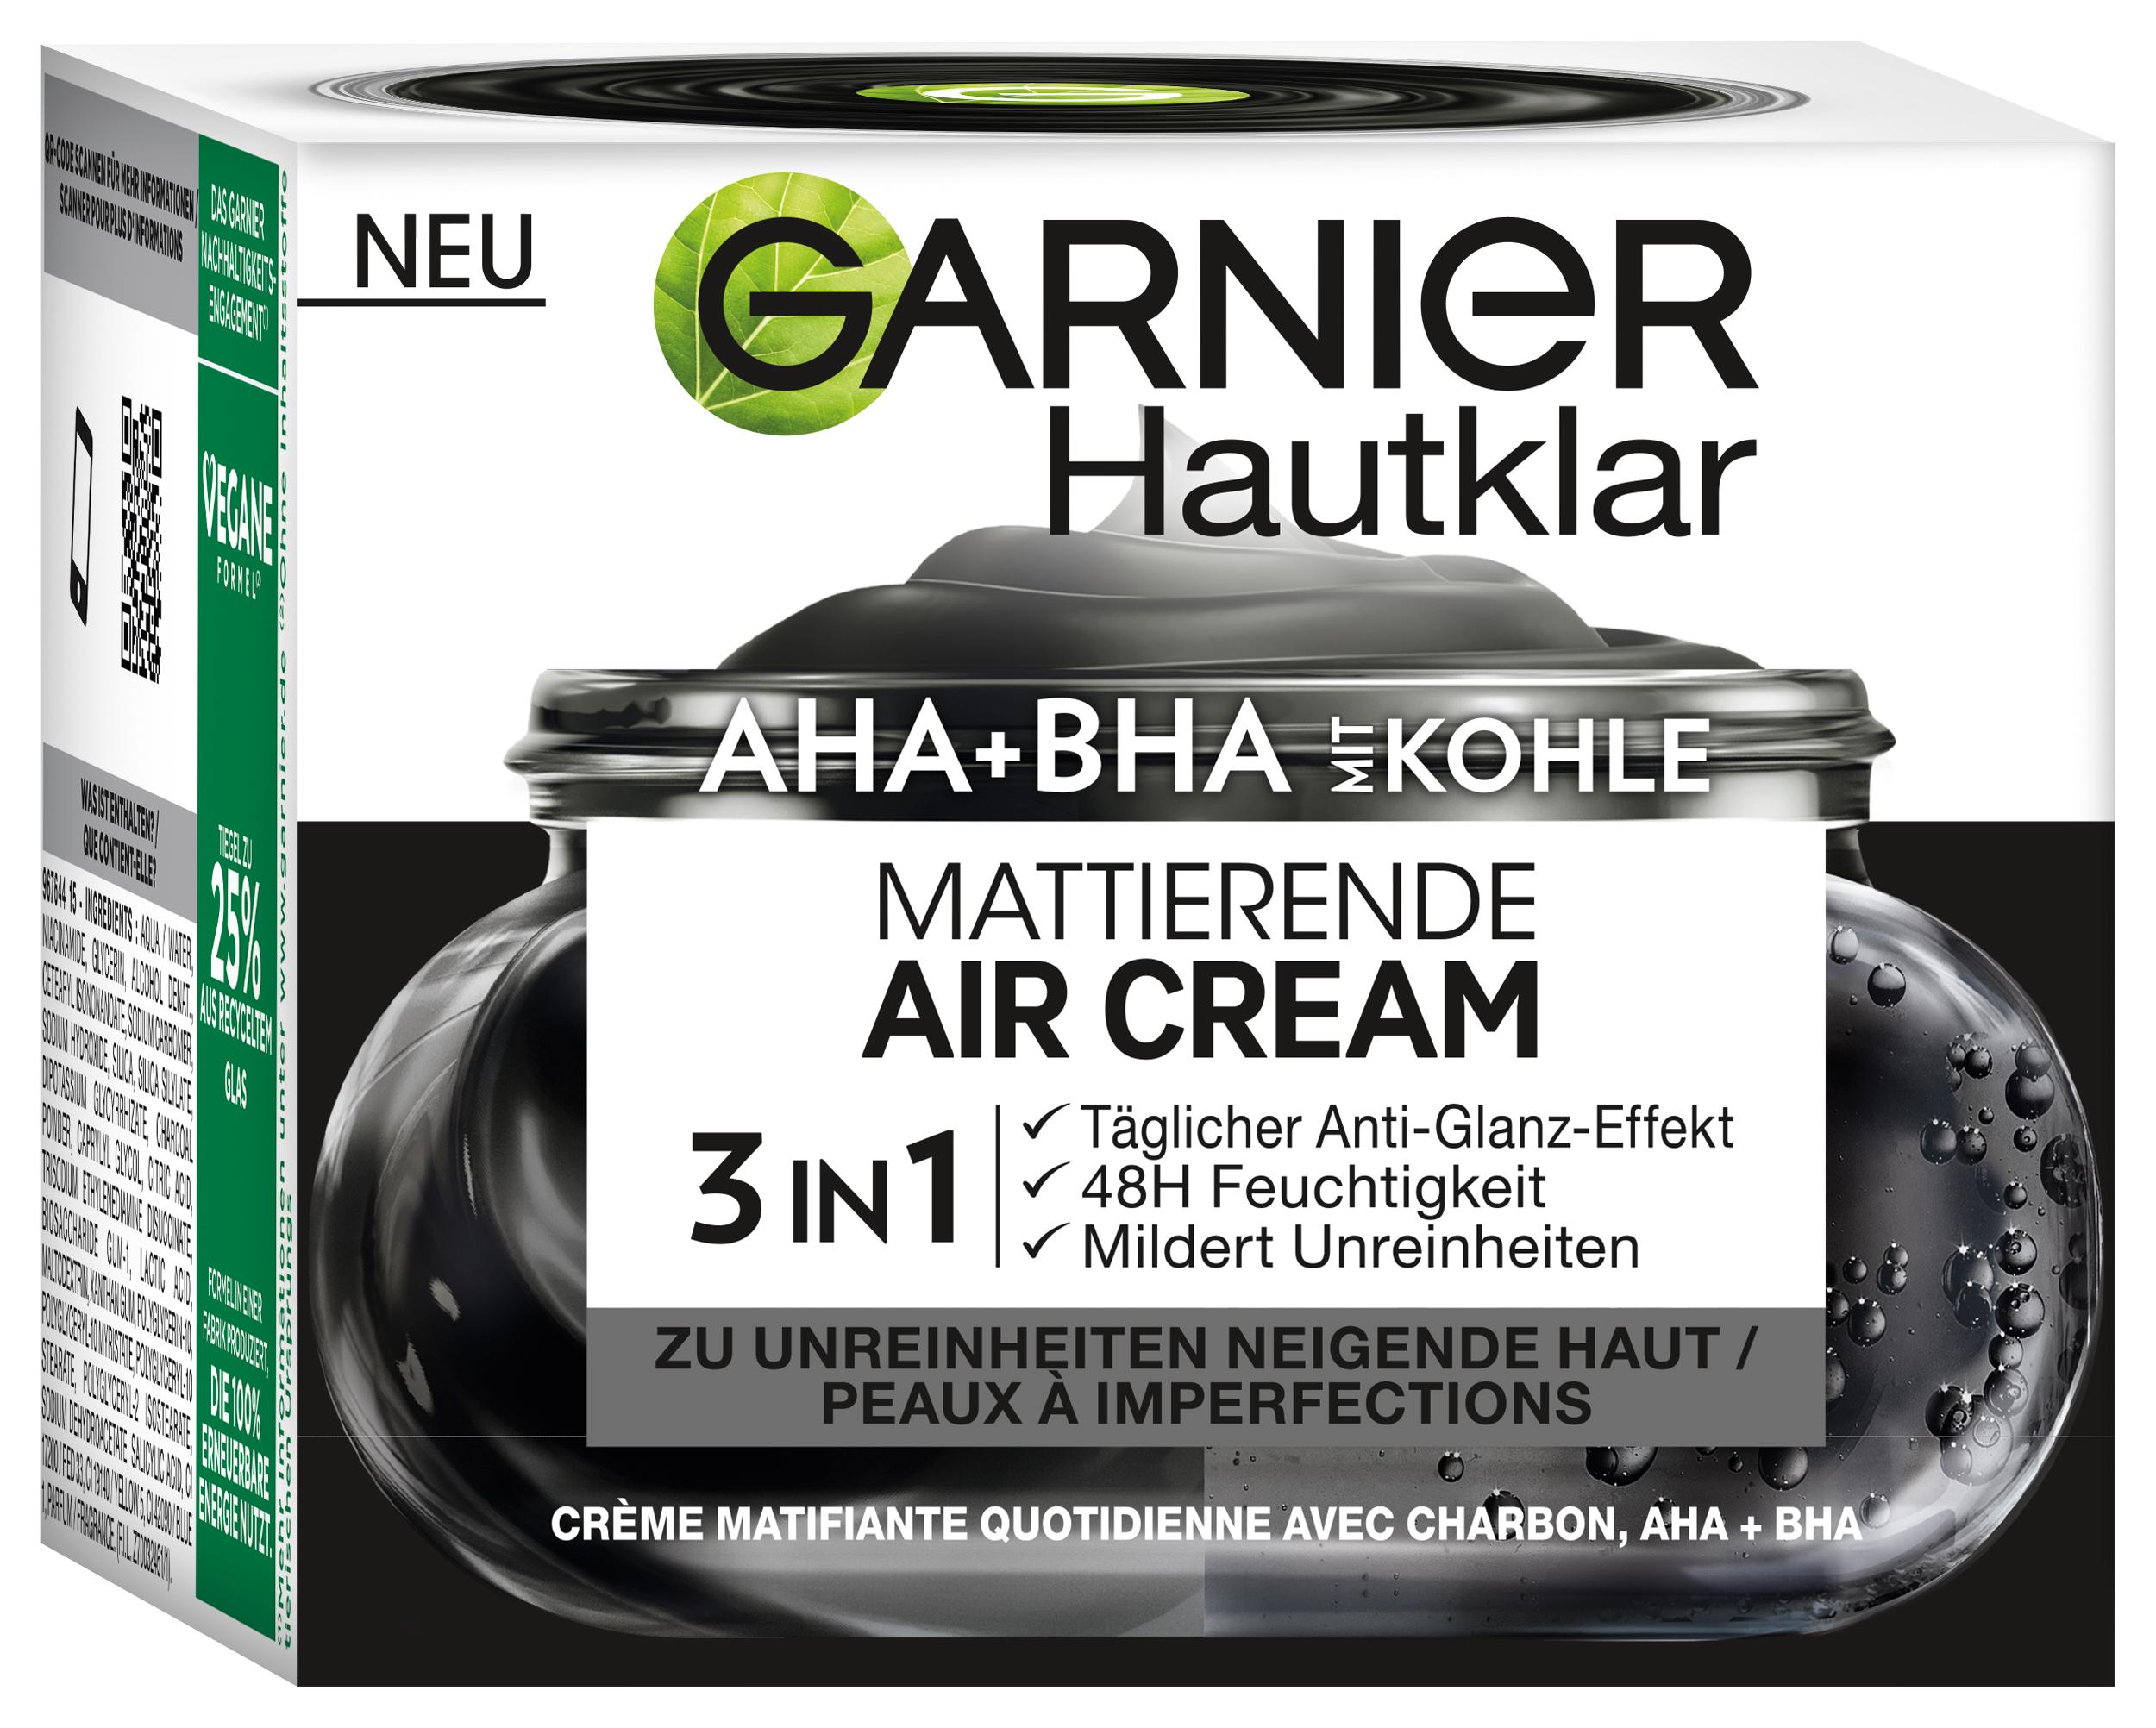 Skinactive Face - Gesichtscreme 3in1 Mattierende Air Cream AHA+BHA mit Kohle